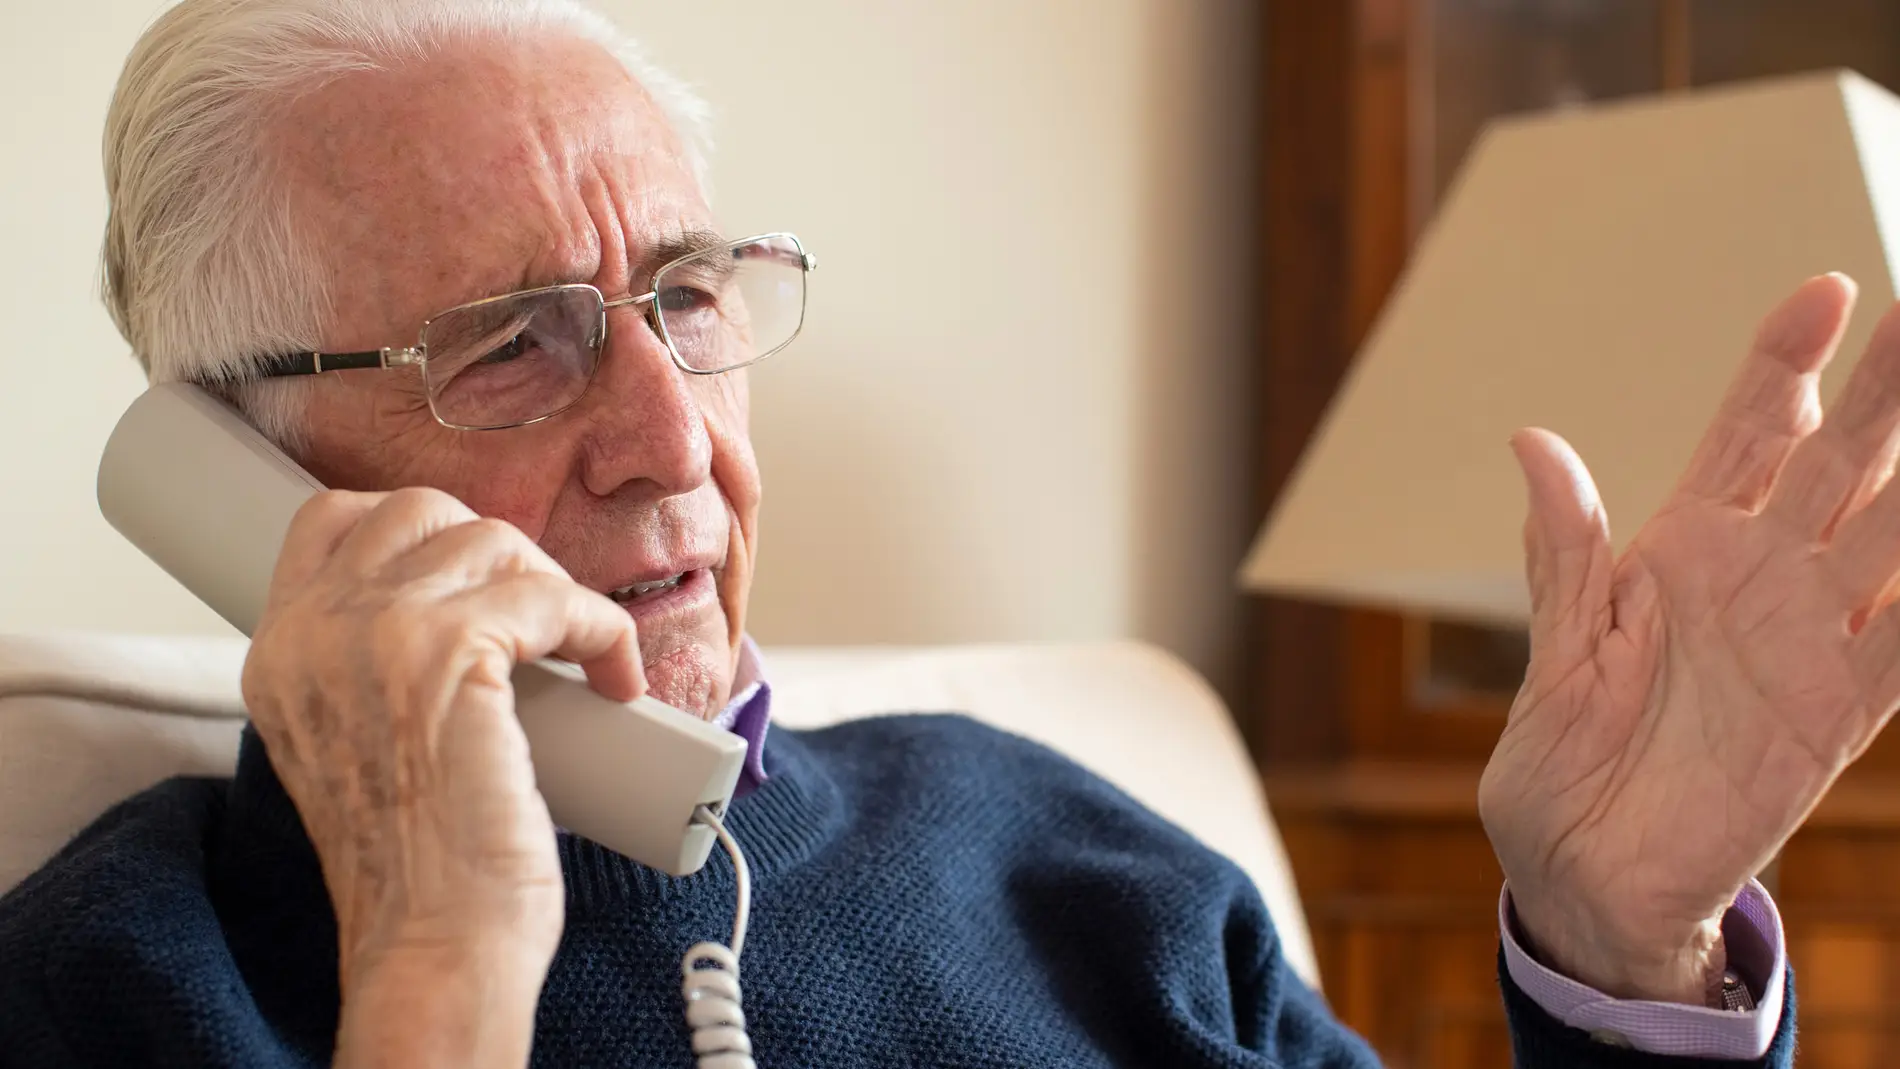 Hombre mayor hablando por teléfono preocupado